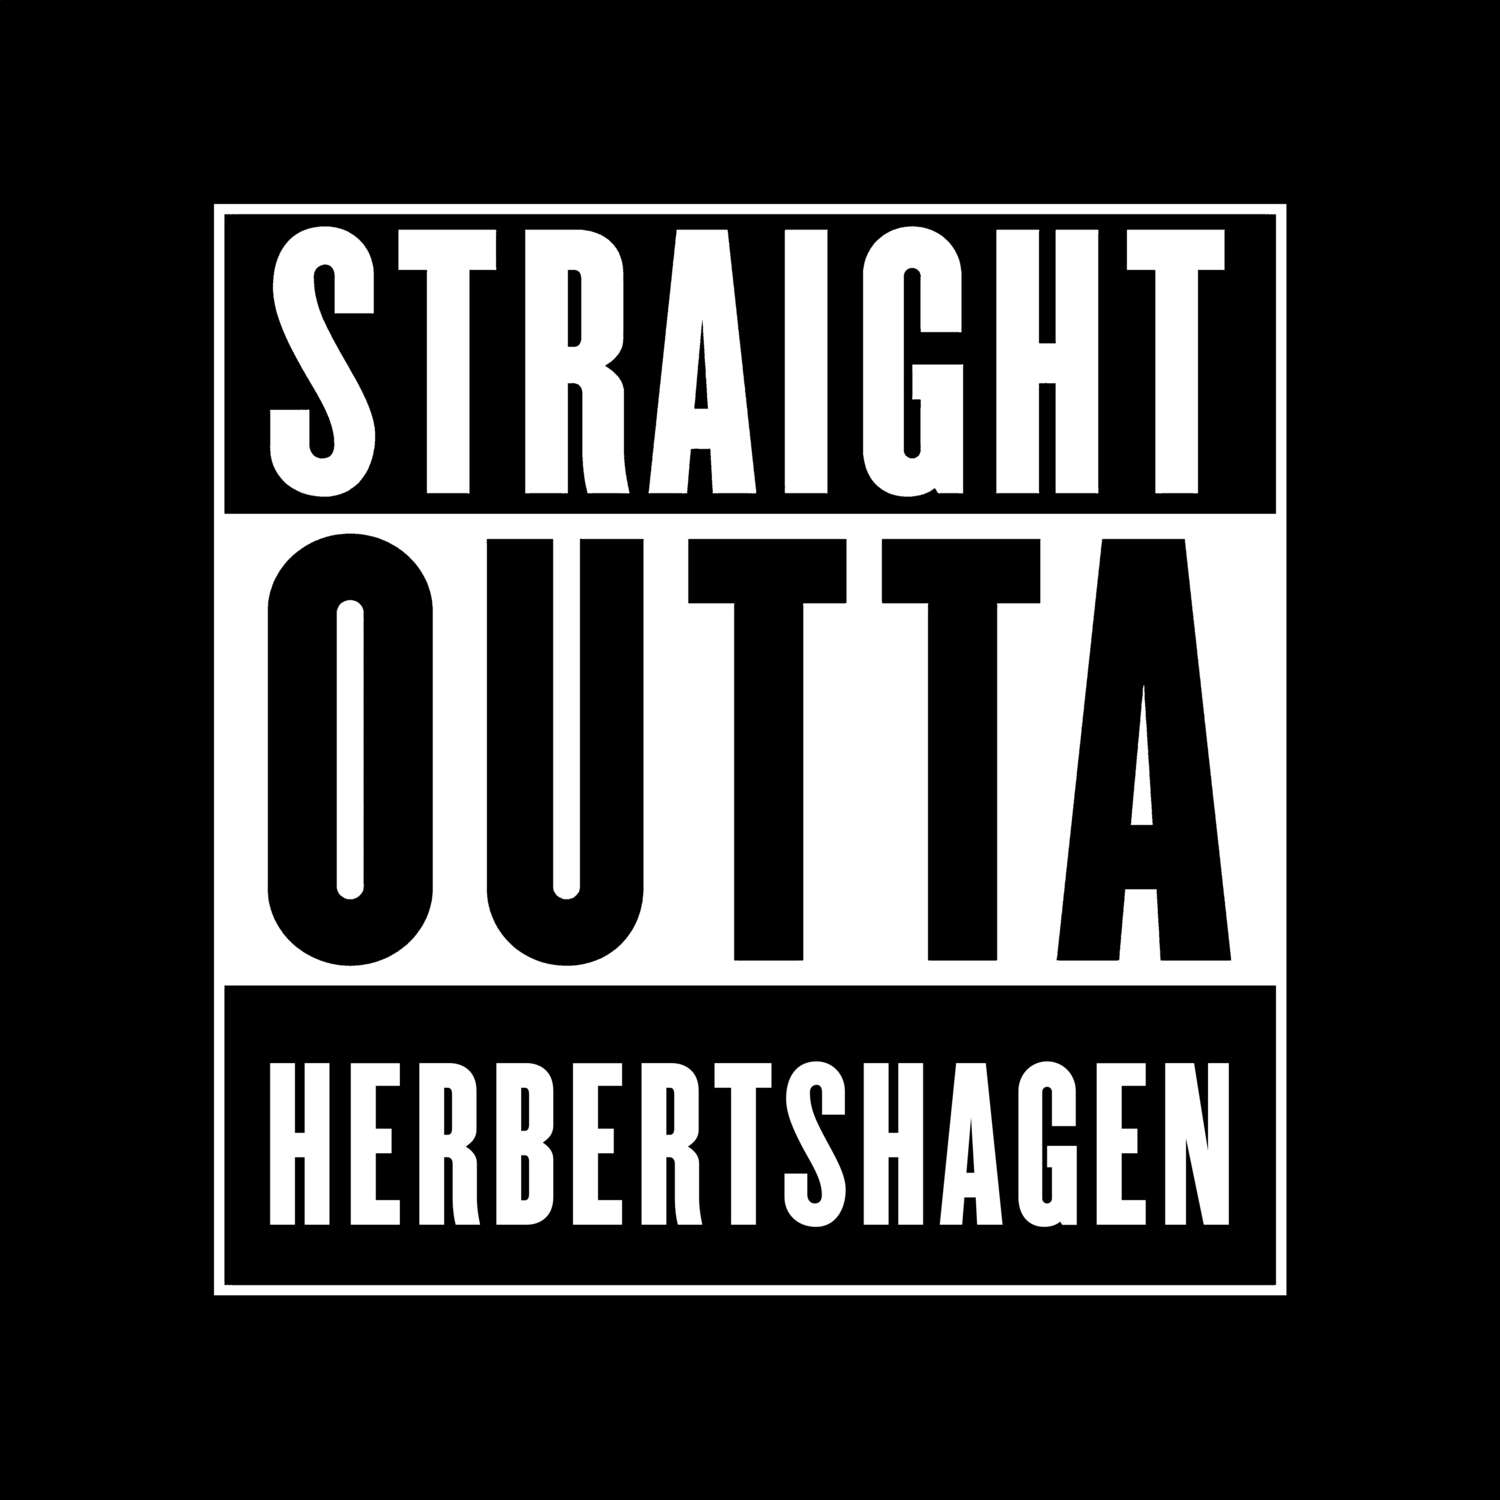 Herbertshagen T-Shirt »Straight Outta«